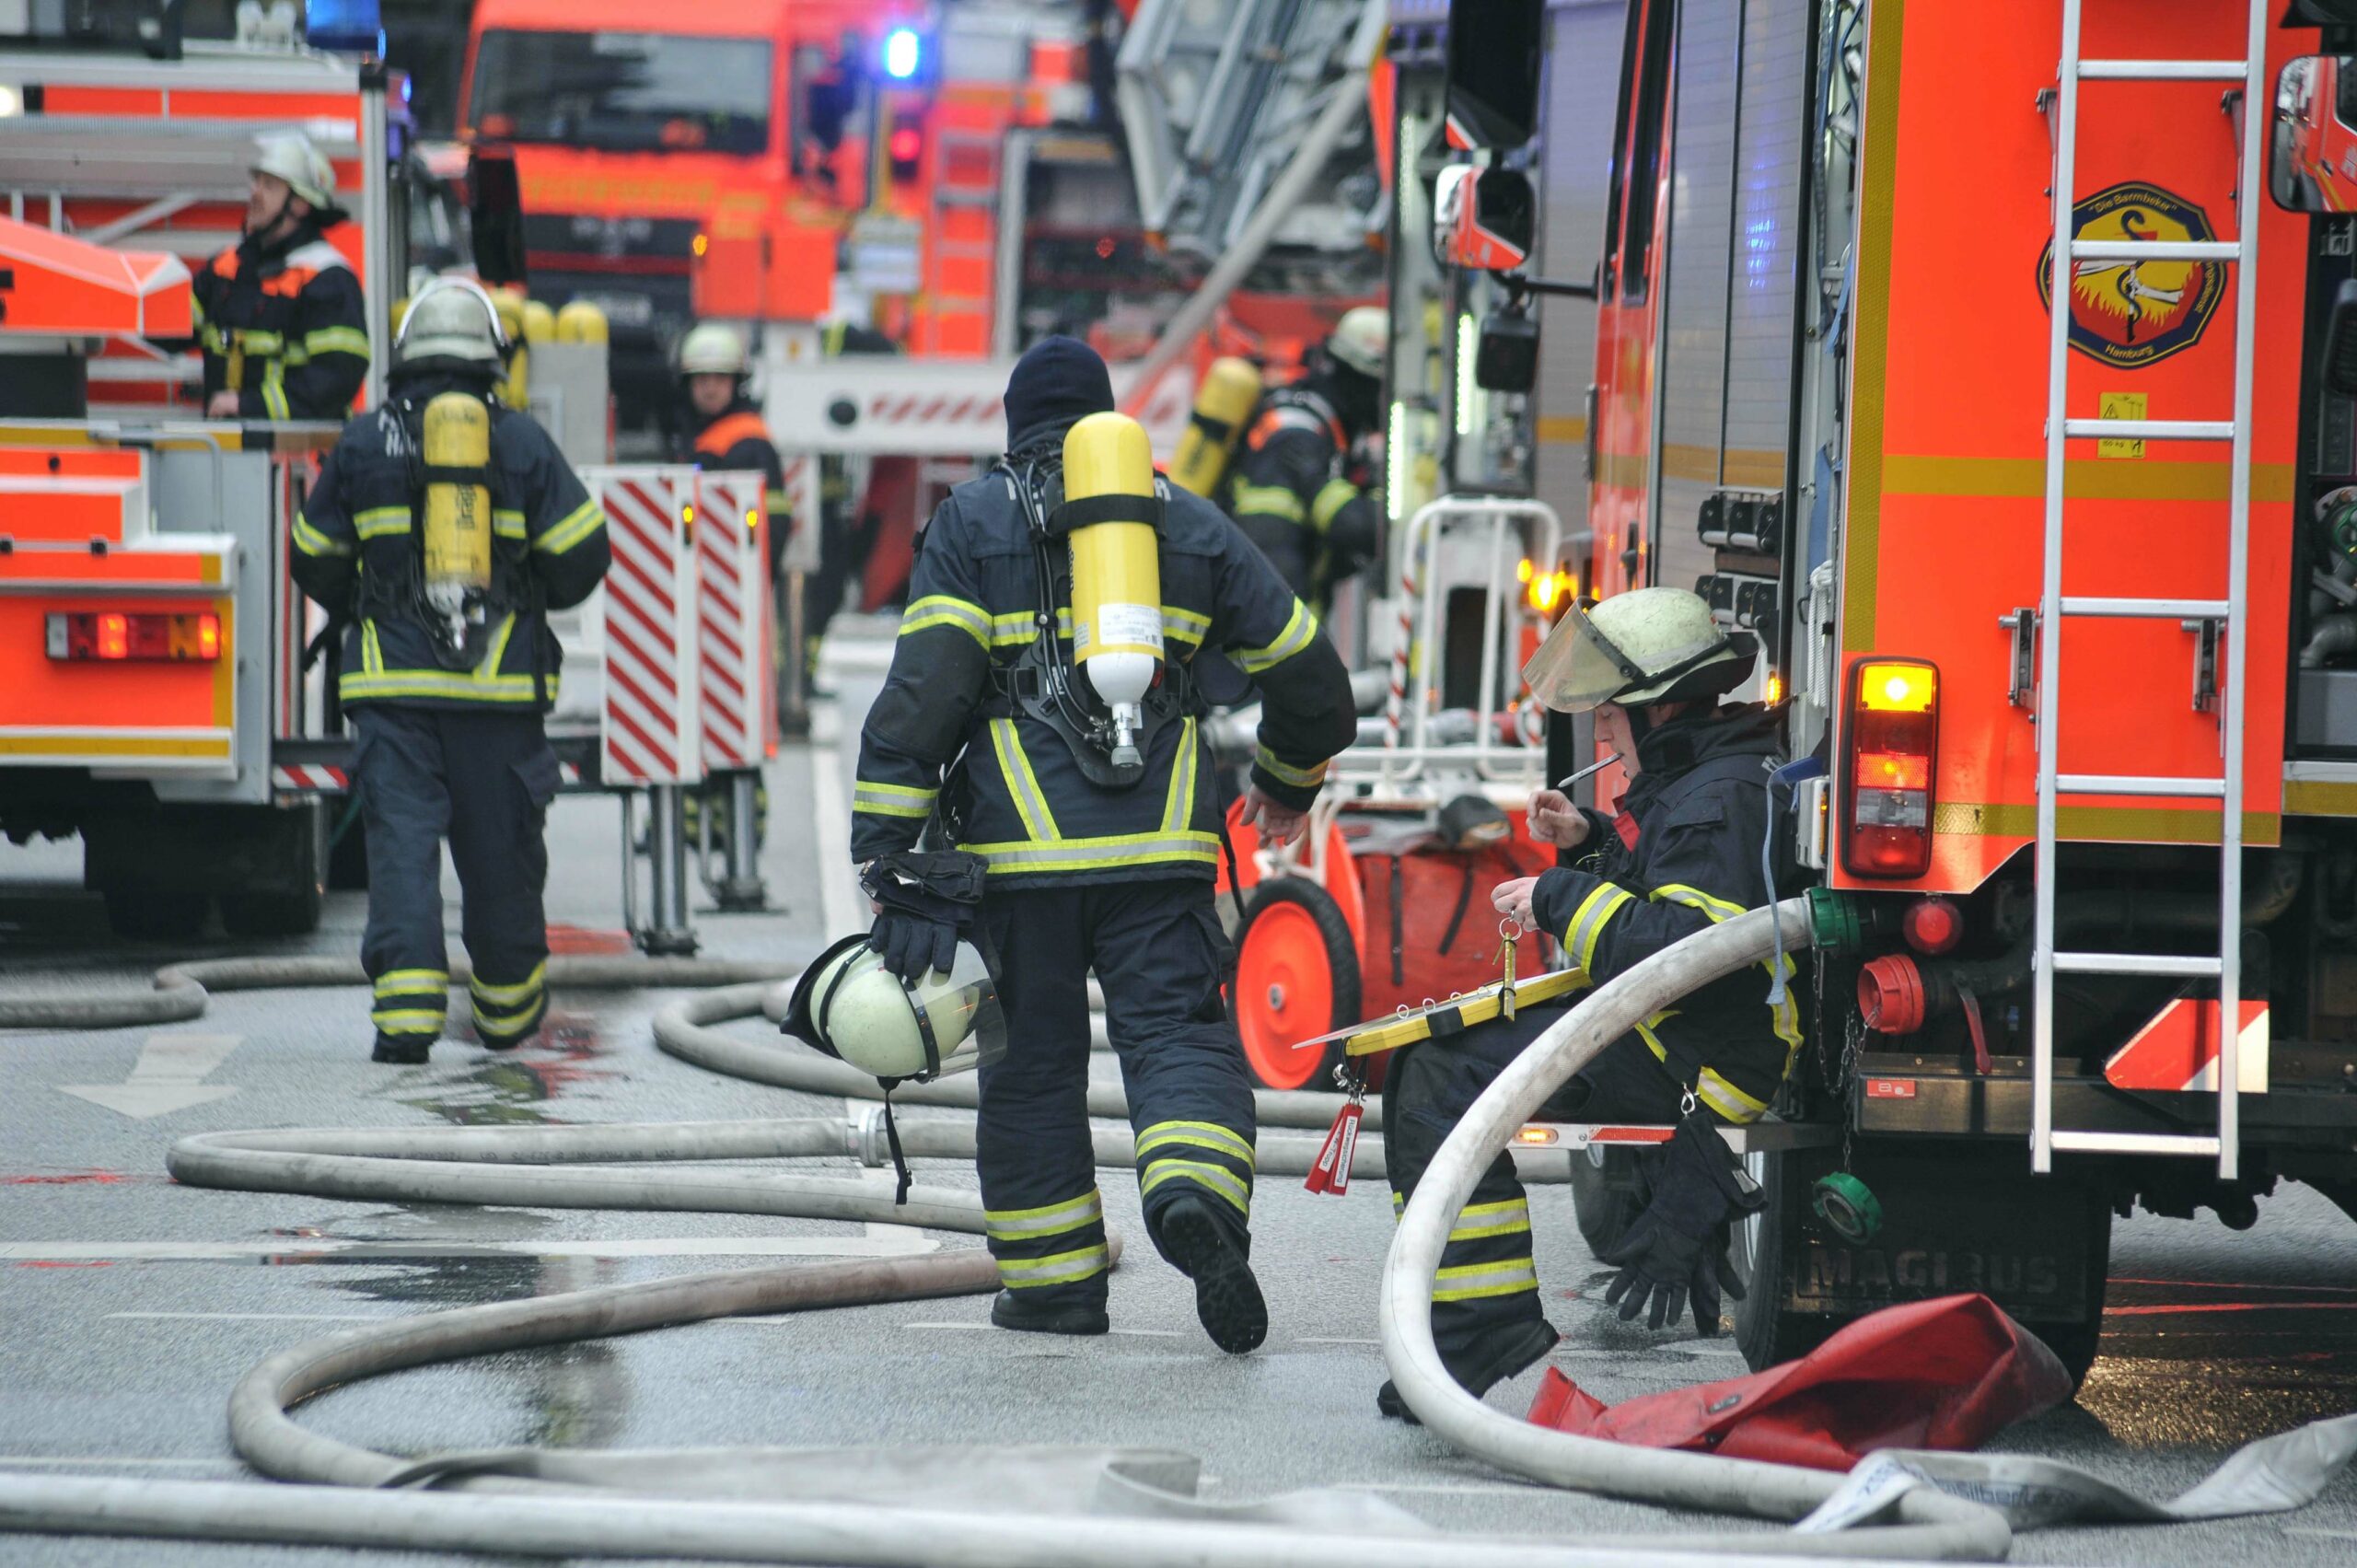 Küchenbrand in Diakonie in Bad Schwartau – vier Bewohner zum Teil schwer verletzt.